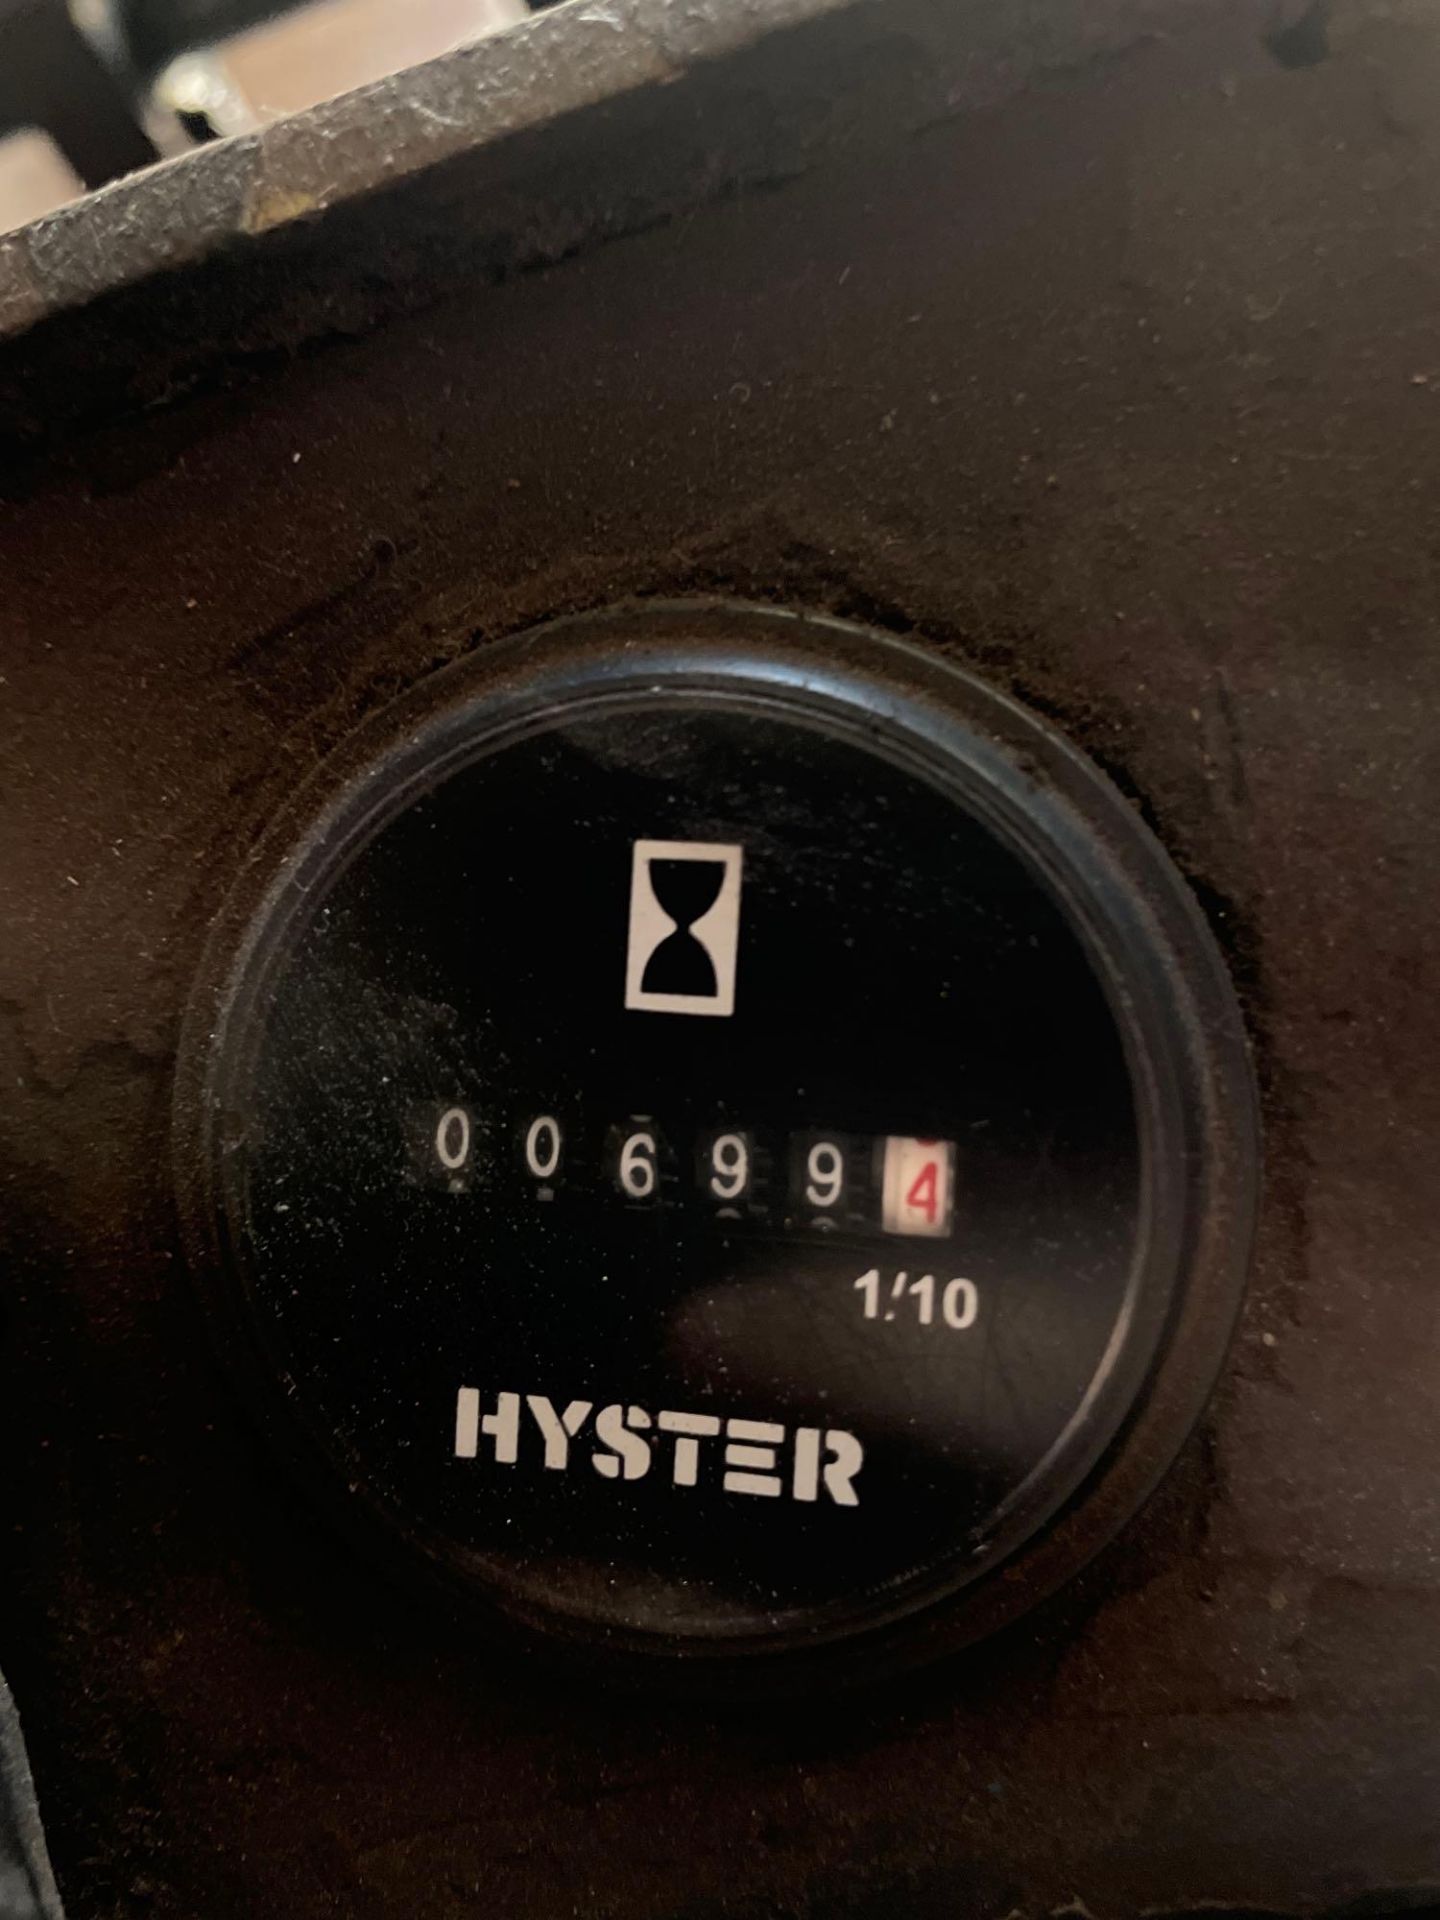 15,000 Lb. Hyster Forklift - Image 6 of 6